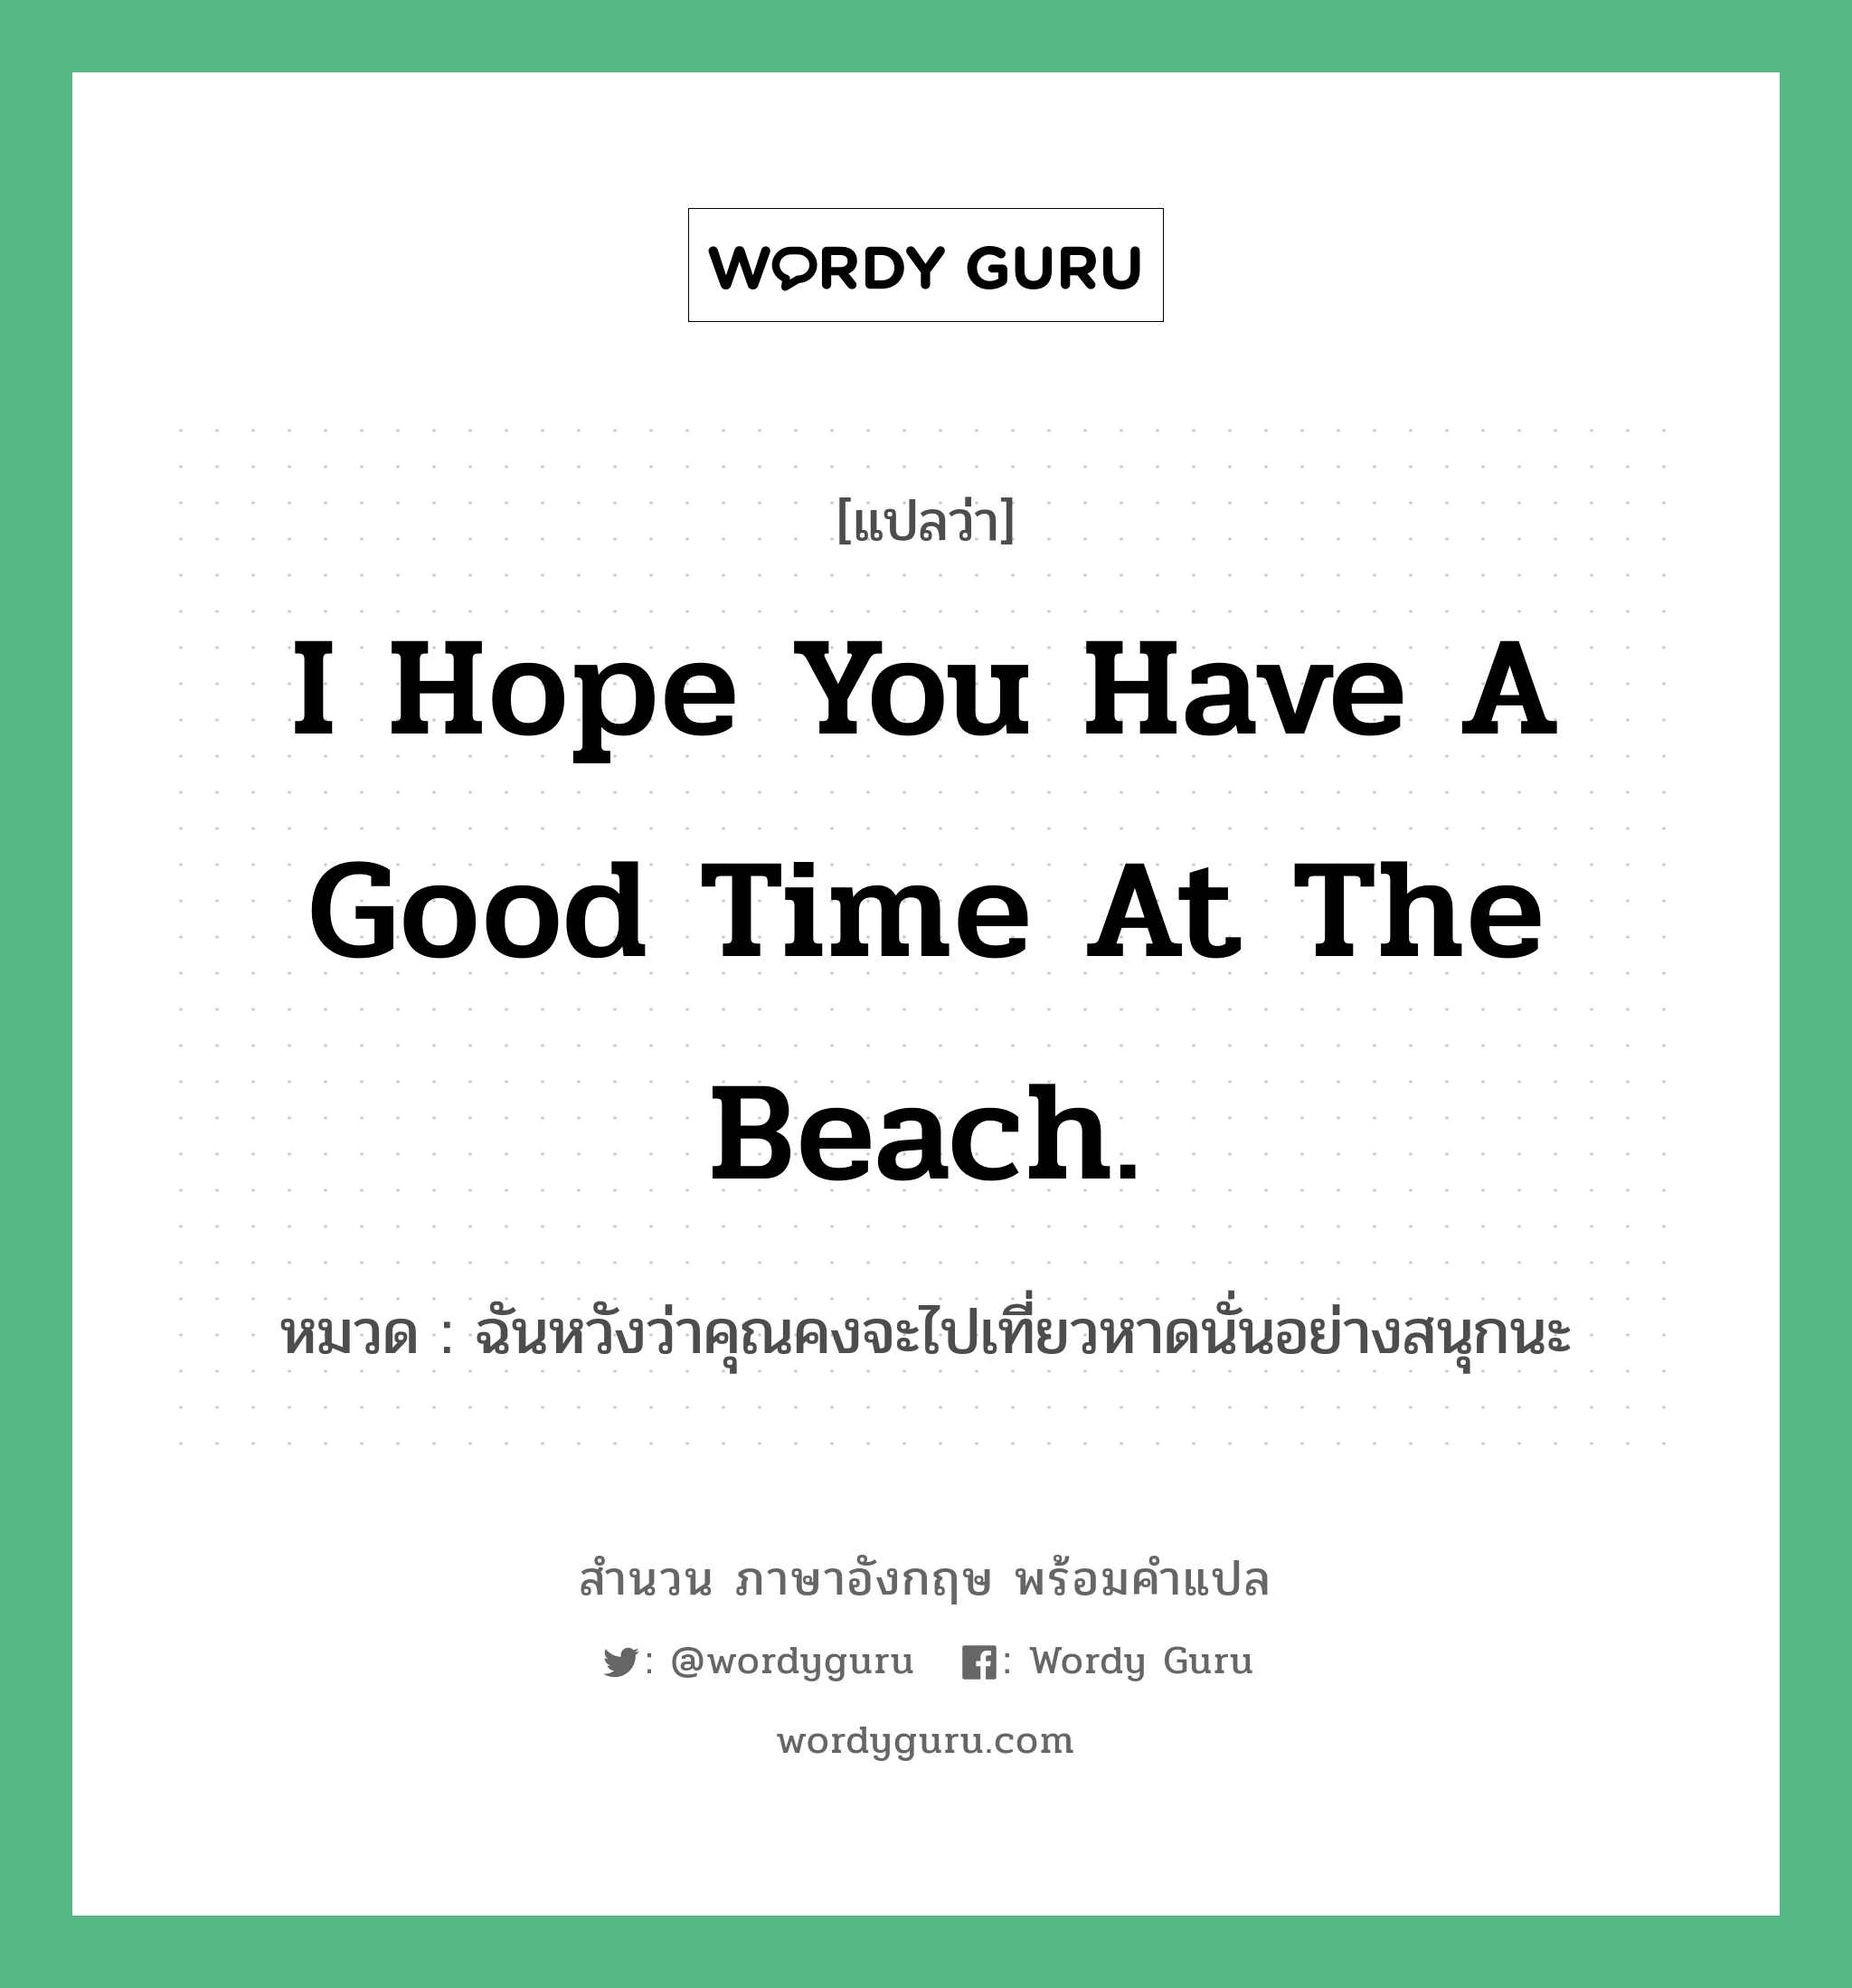 I hope you have a good time at the beach. แปลว่า?, สำนวนภาษาอังกฤษ I hope you have a good time at the beach. หมวด ฉันหวังว่าคุณคงจะไปเที่ยวหาดนั่นอย่างสนุกนะ